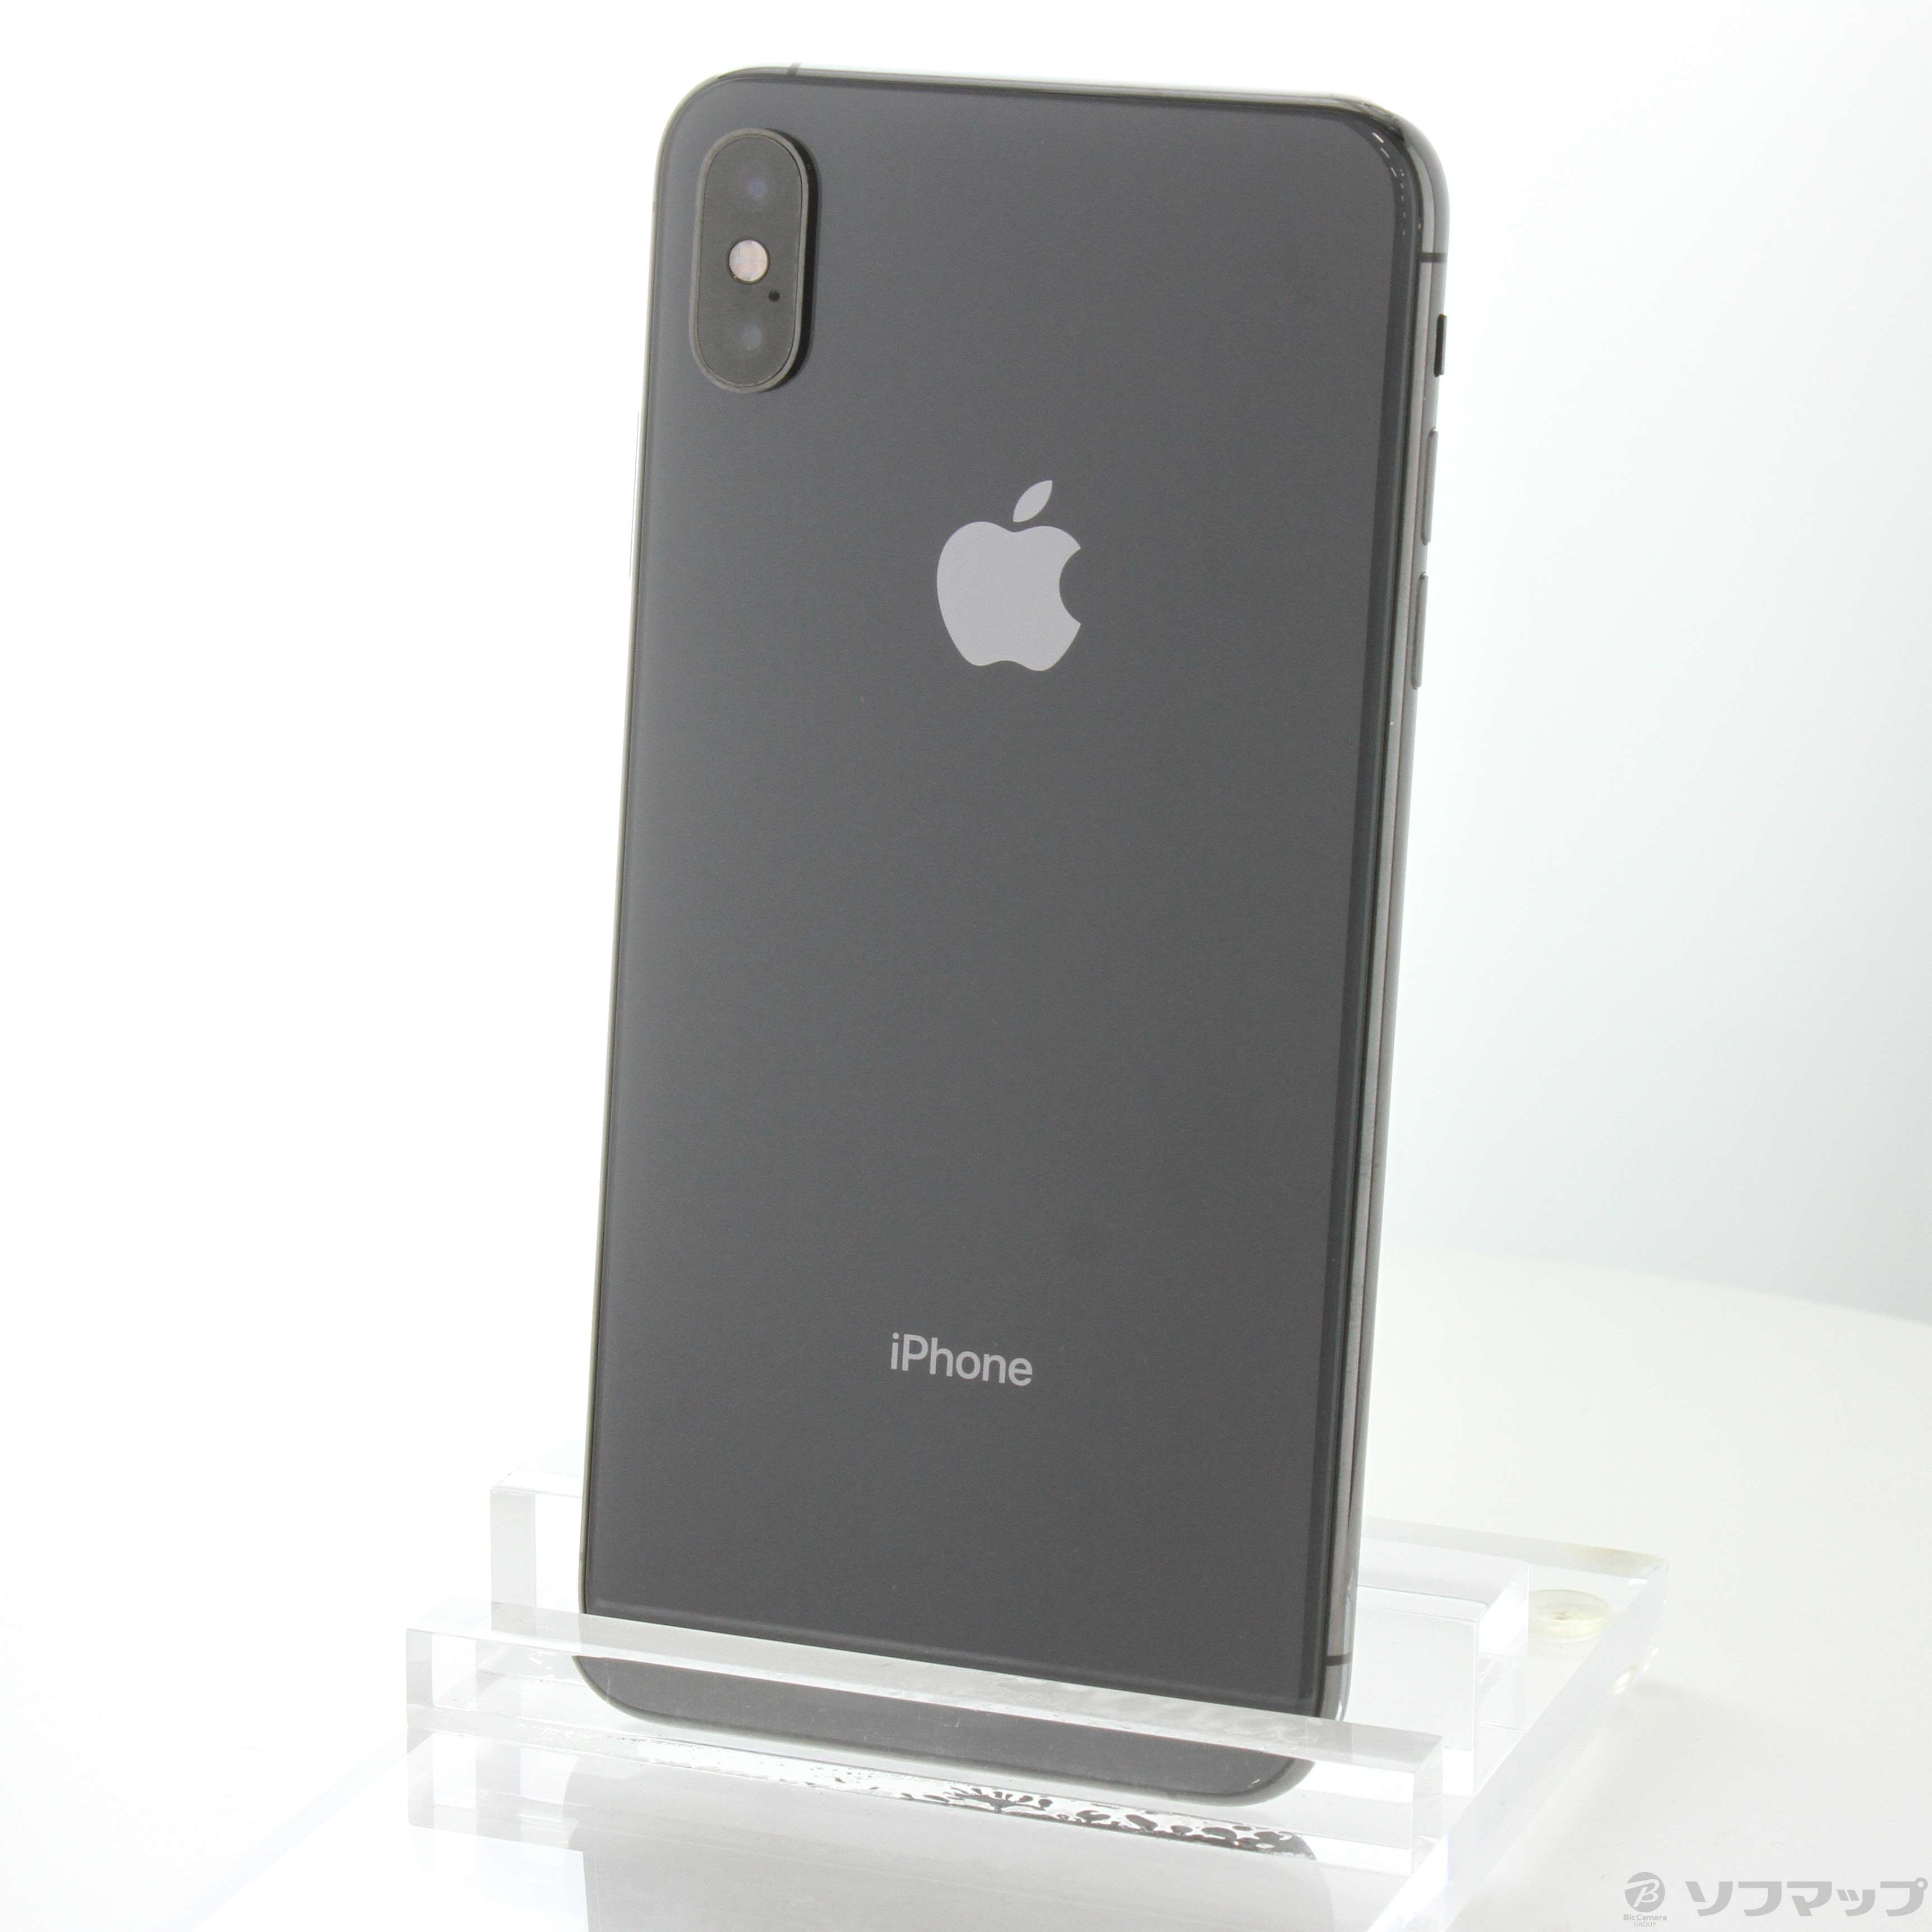 iPhone X 256GB SIMフリー Space Gray 値下げ - スマートフォン/携帯電話